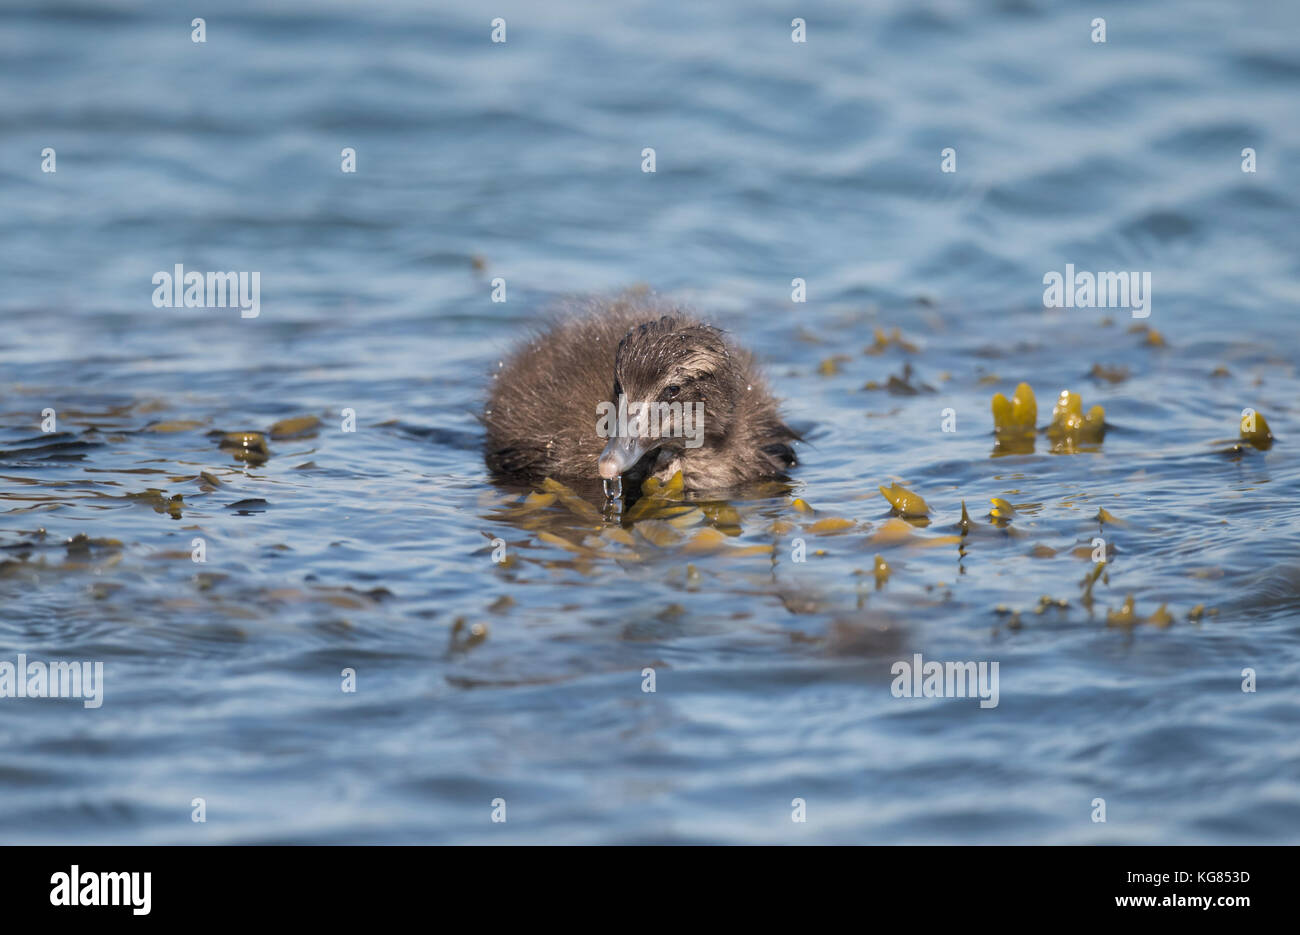 Eider duck, juvenile, swimming in the sea Stock Photo